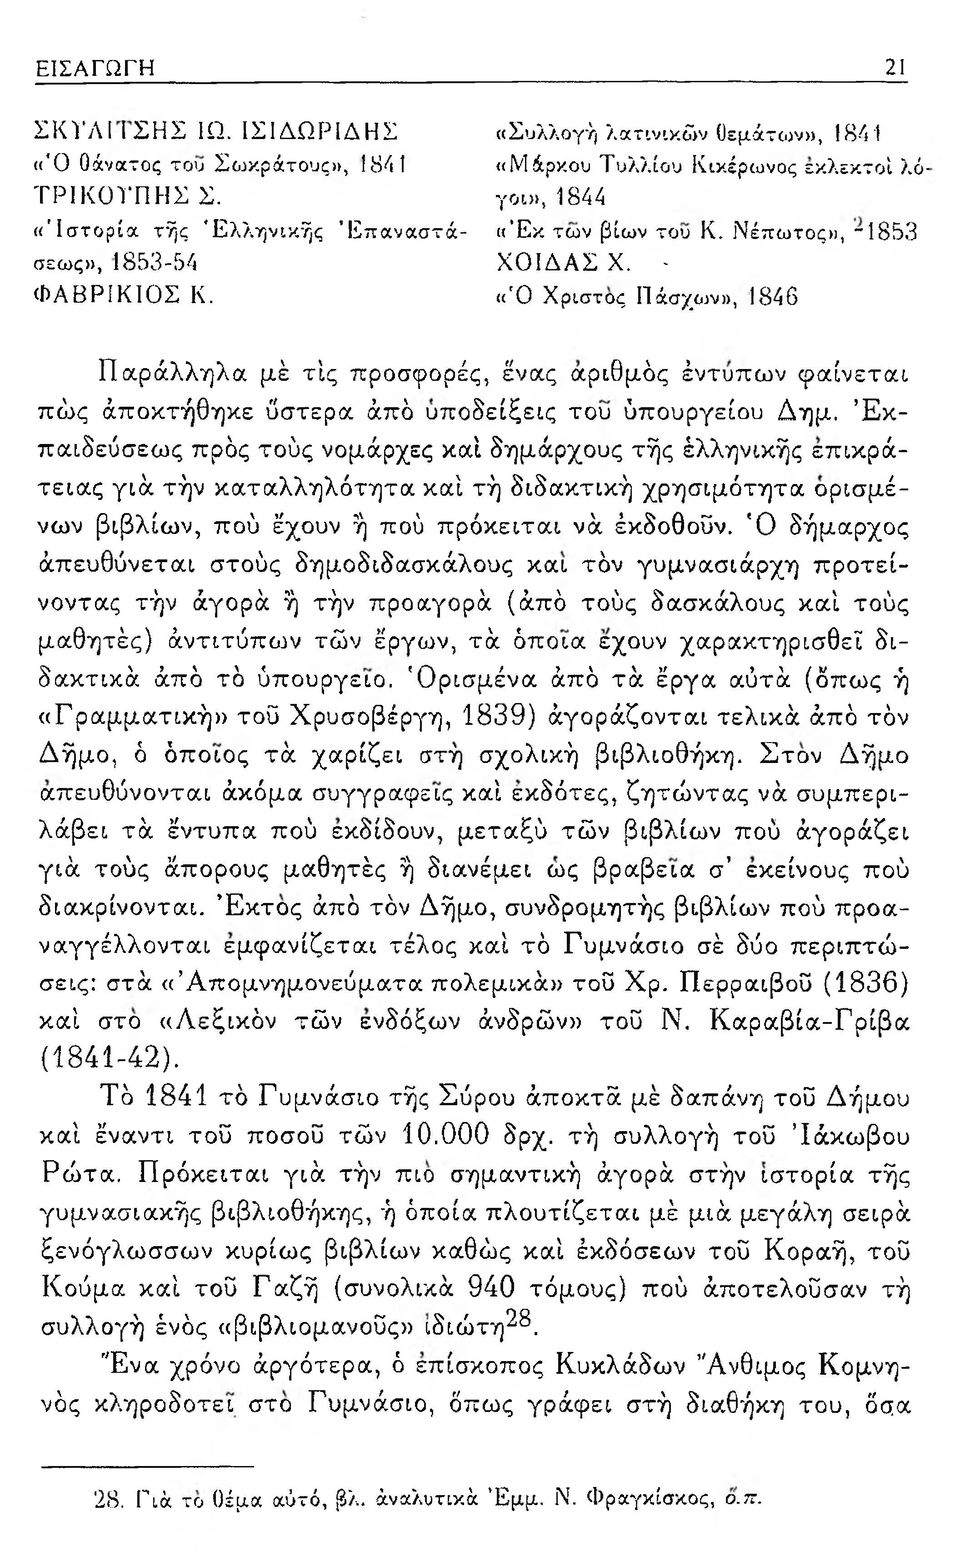 <('0 Χρίστος Πάσχων», 1846 Παράλληλα μέ τις προσφορές, ένας αριθμός έντυπων φαίνεται πώς άποκτήθηκε ύστερα άπό υποδείξεις του ύπουργείου Δημ.